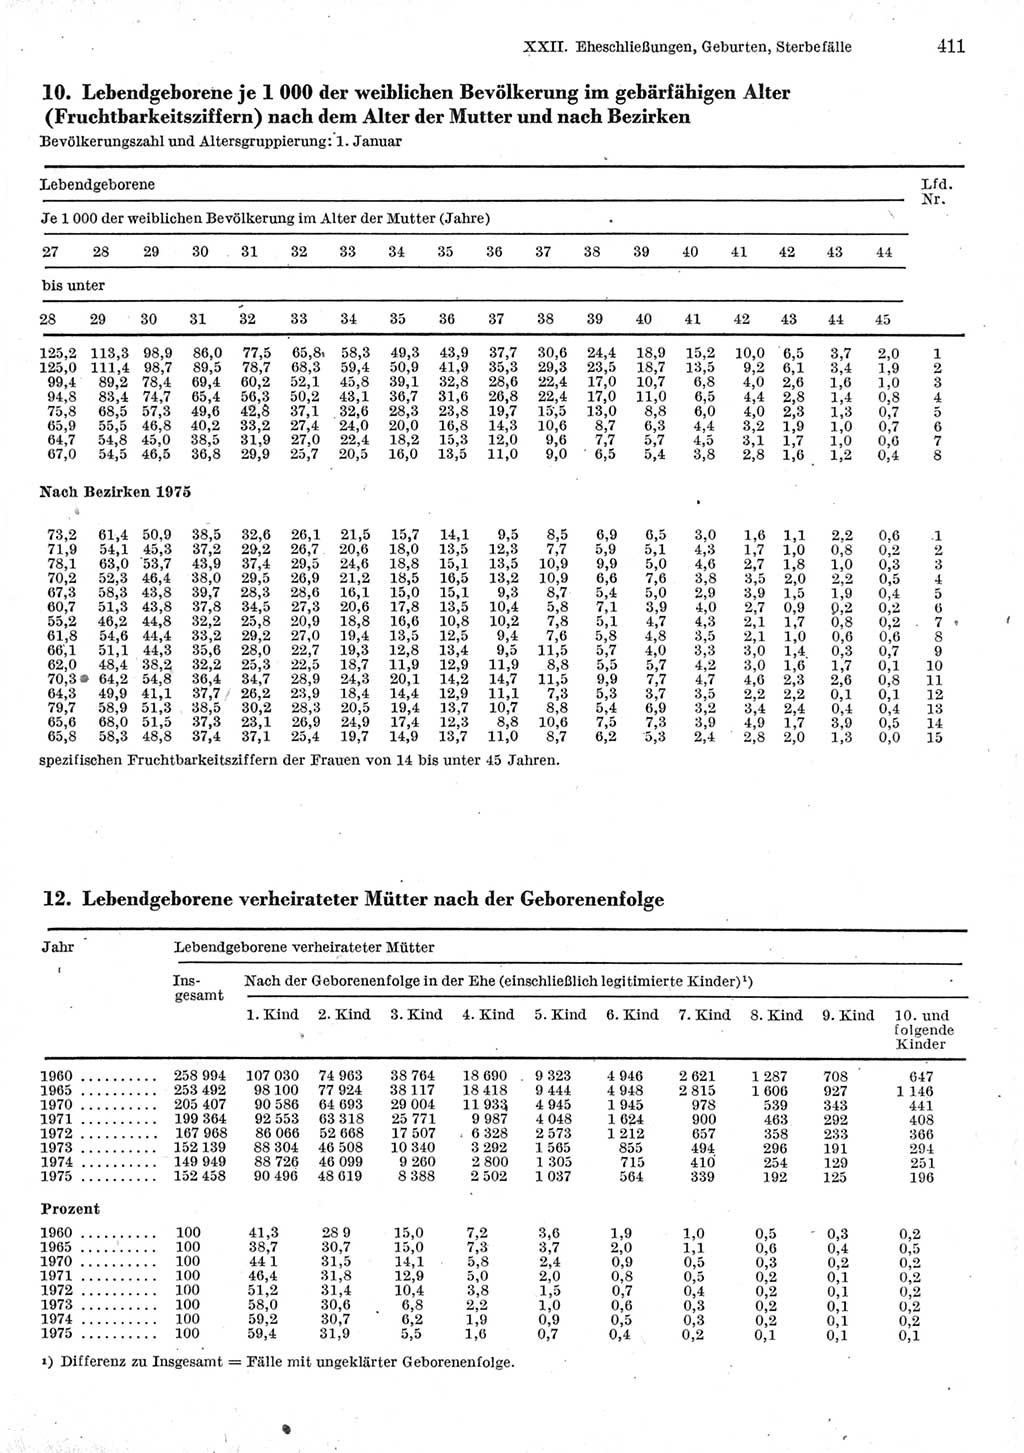 Statistisches Jahrbuch der Deutschen Demokratischen Republik (DDR) 1977, Seite 411 (Stat. Jb. DDR 1977, S. 411)